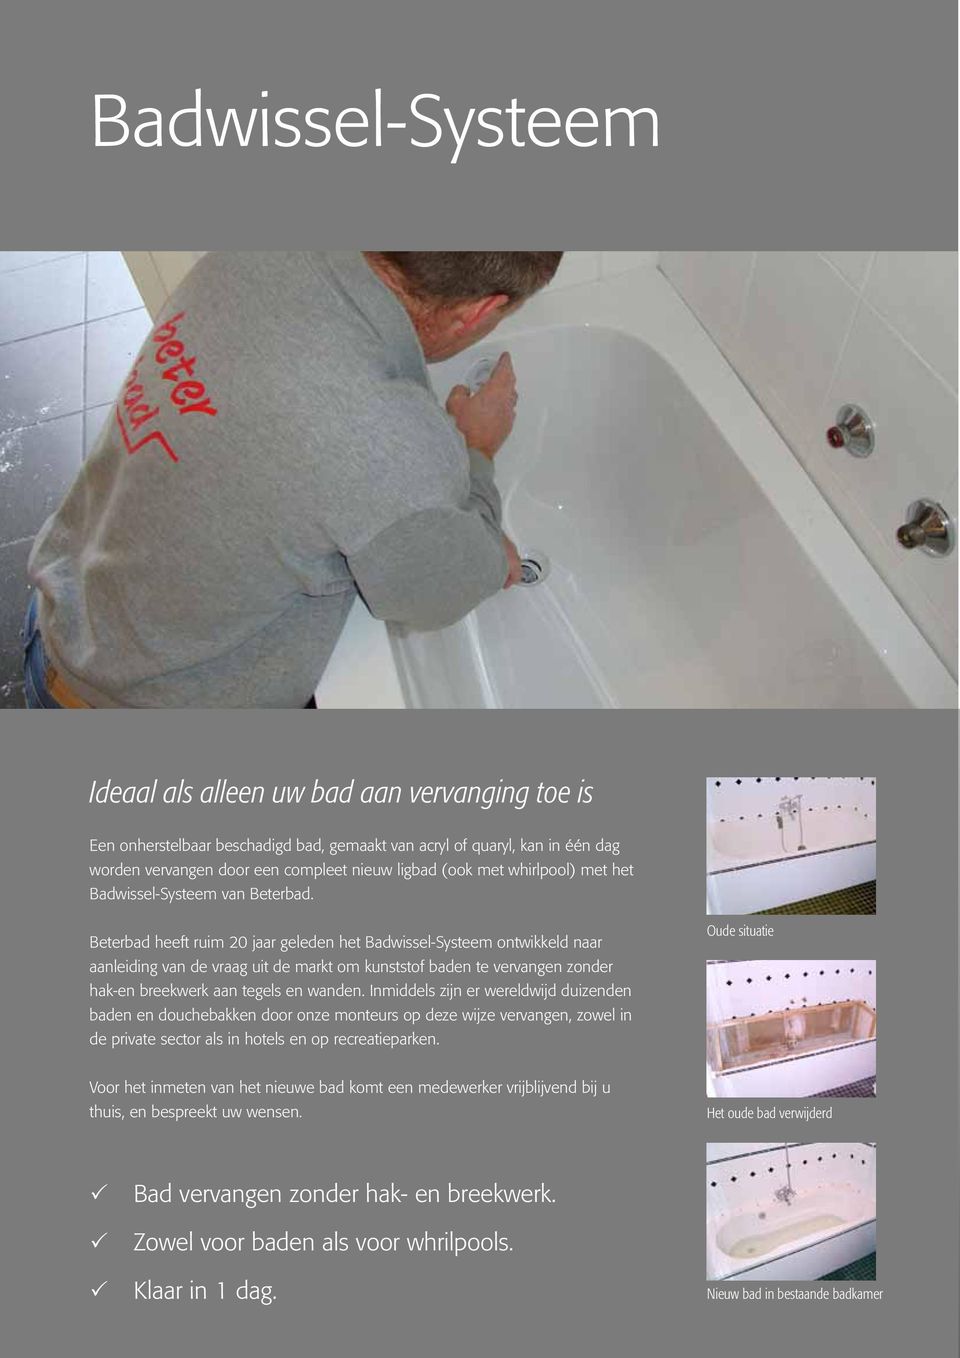 Beterbad heeft ruim 20 jaar geleden het Badwissel-Systeem ontwikkeld naar aanleiding van de vraag uit de markt om kunststof baden te vervangen zonder hak-en breekwerk aan tegels en wanden.